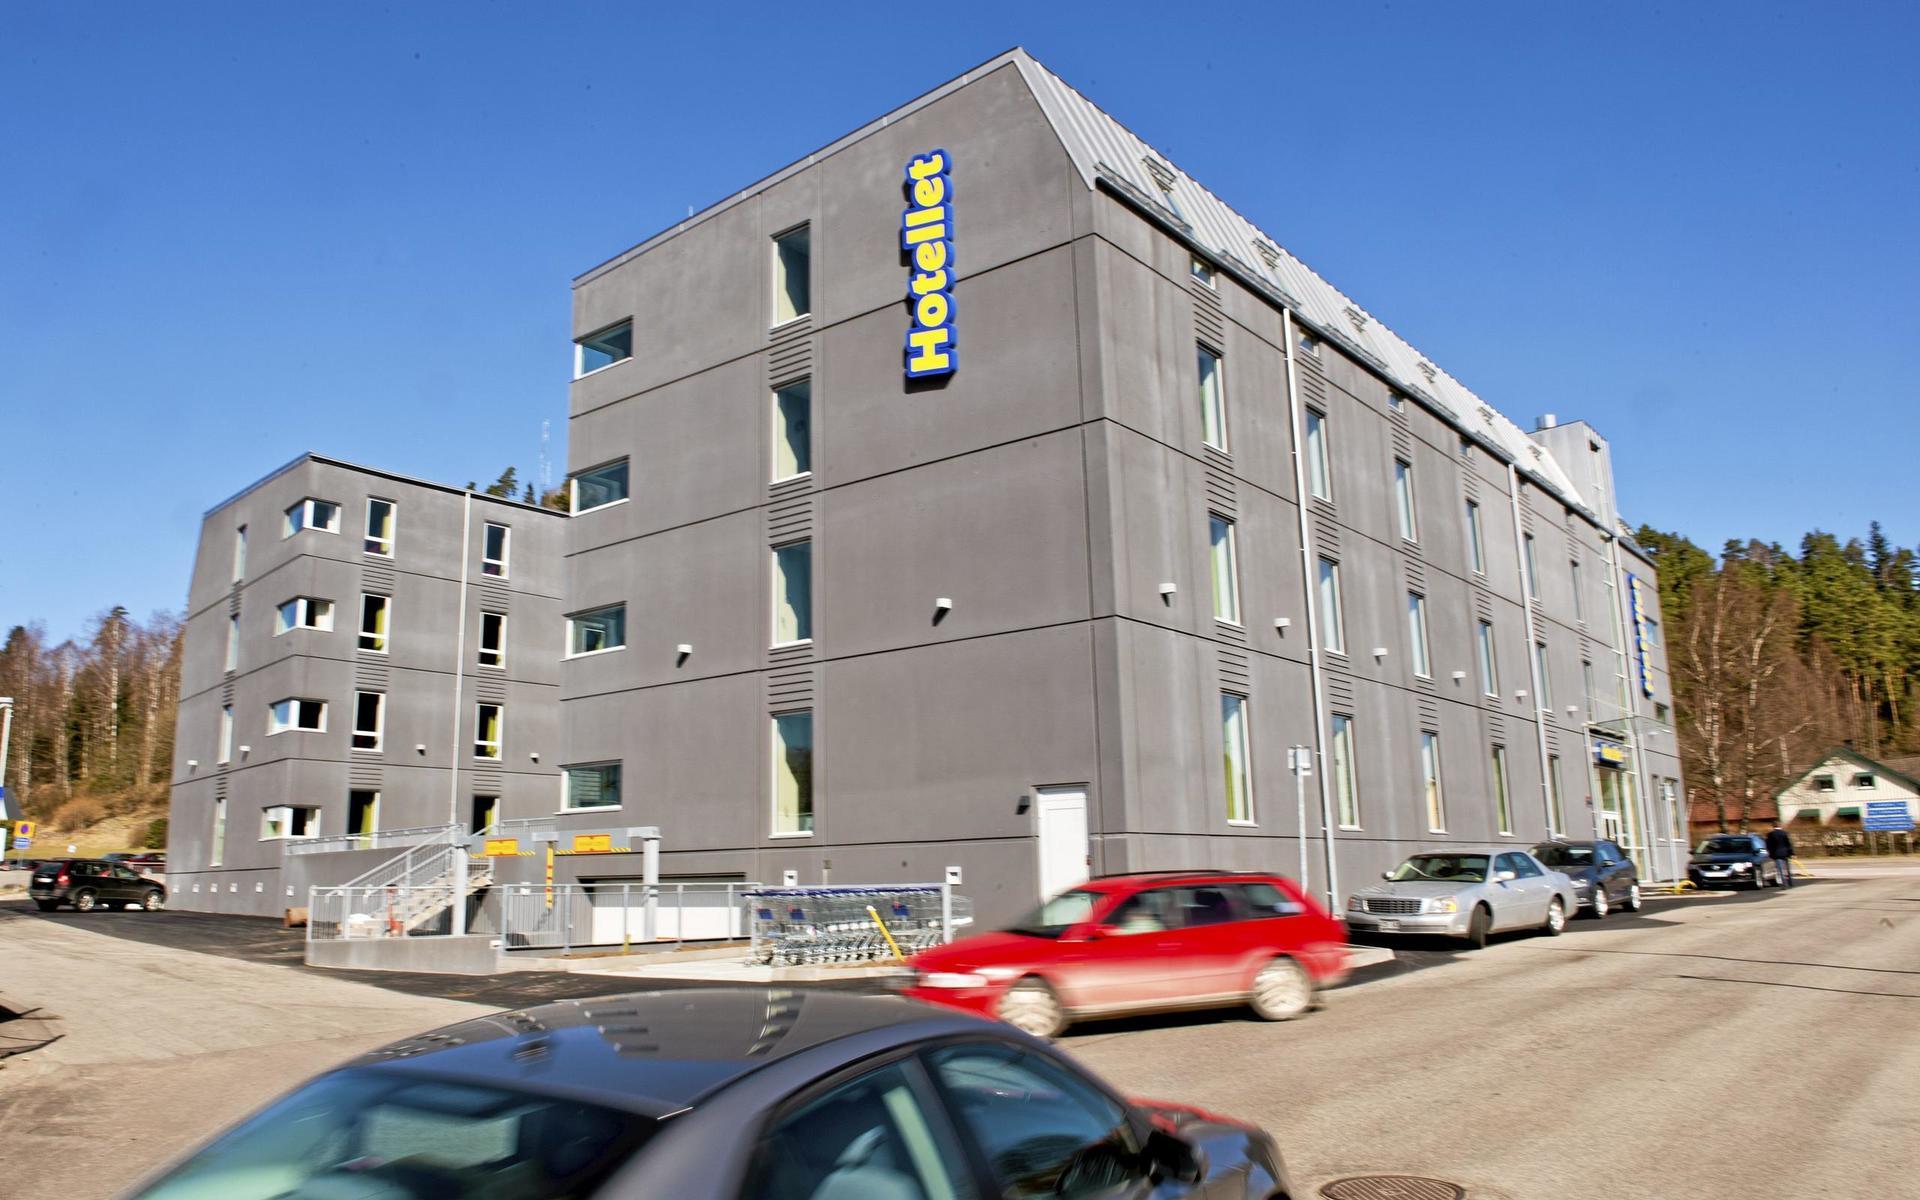 2013 öppnade Gekås sitt hotell. Nu byggs det ett till. 